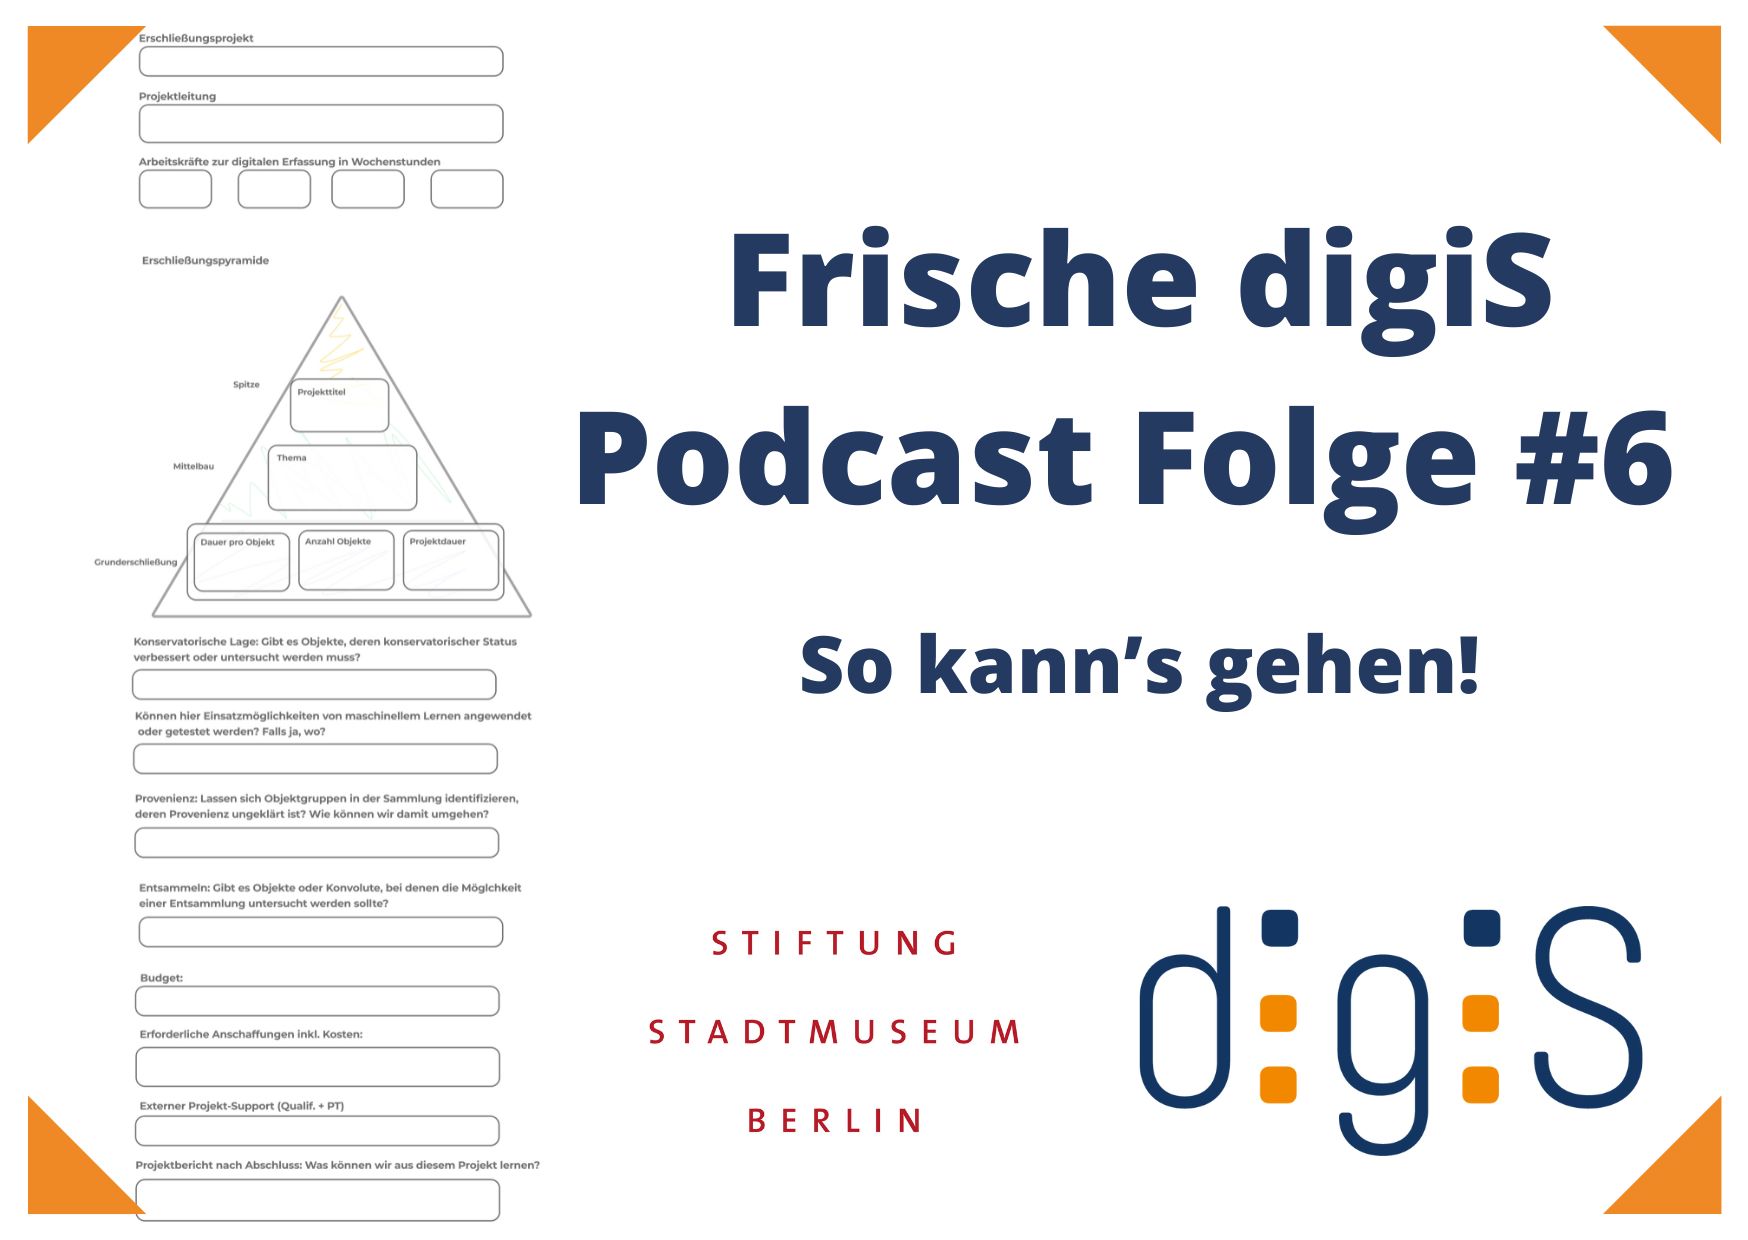 Frische Folge #6 des digiS-Podcast: So kann’s gehen mit der Stiftung Stadtmuseum Berlin